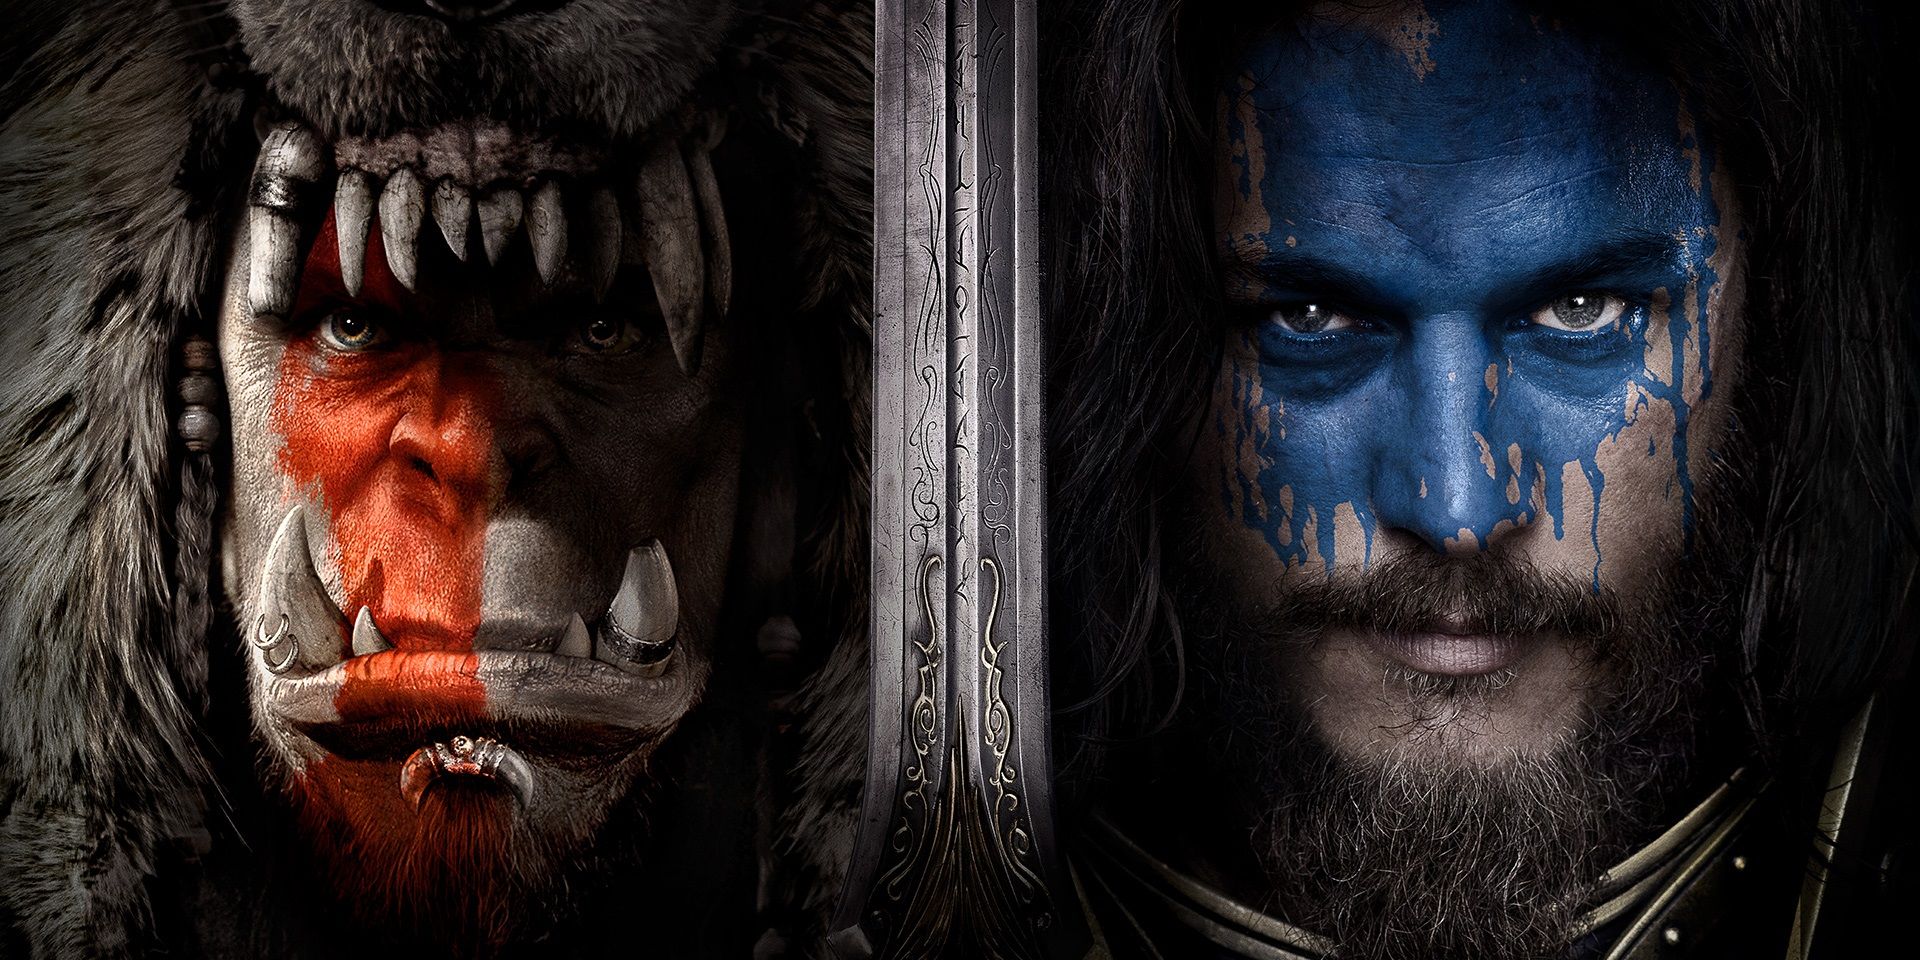 ¿Vale la pena ver Warcraft? Análisis y puntuaciones en Rotten Tomatoes